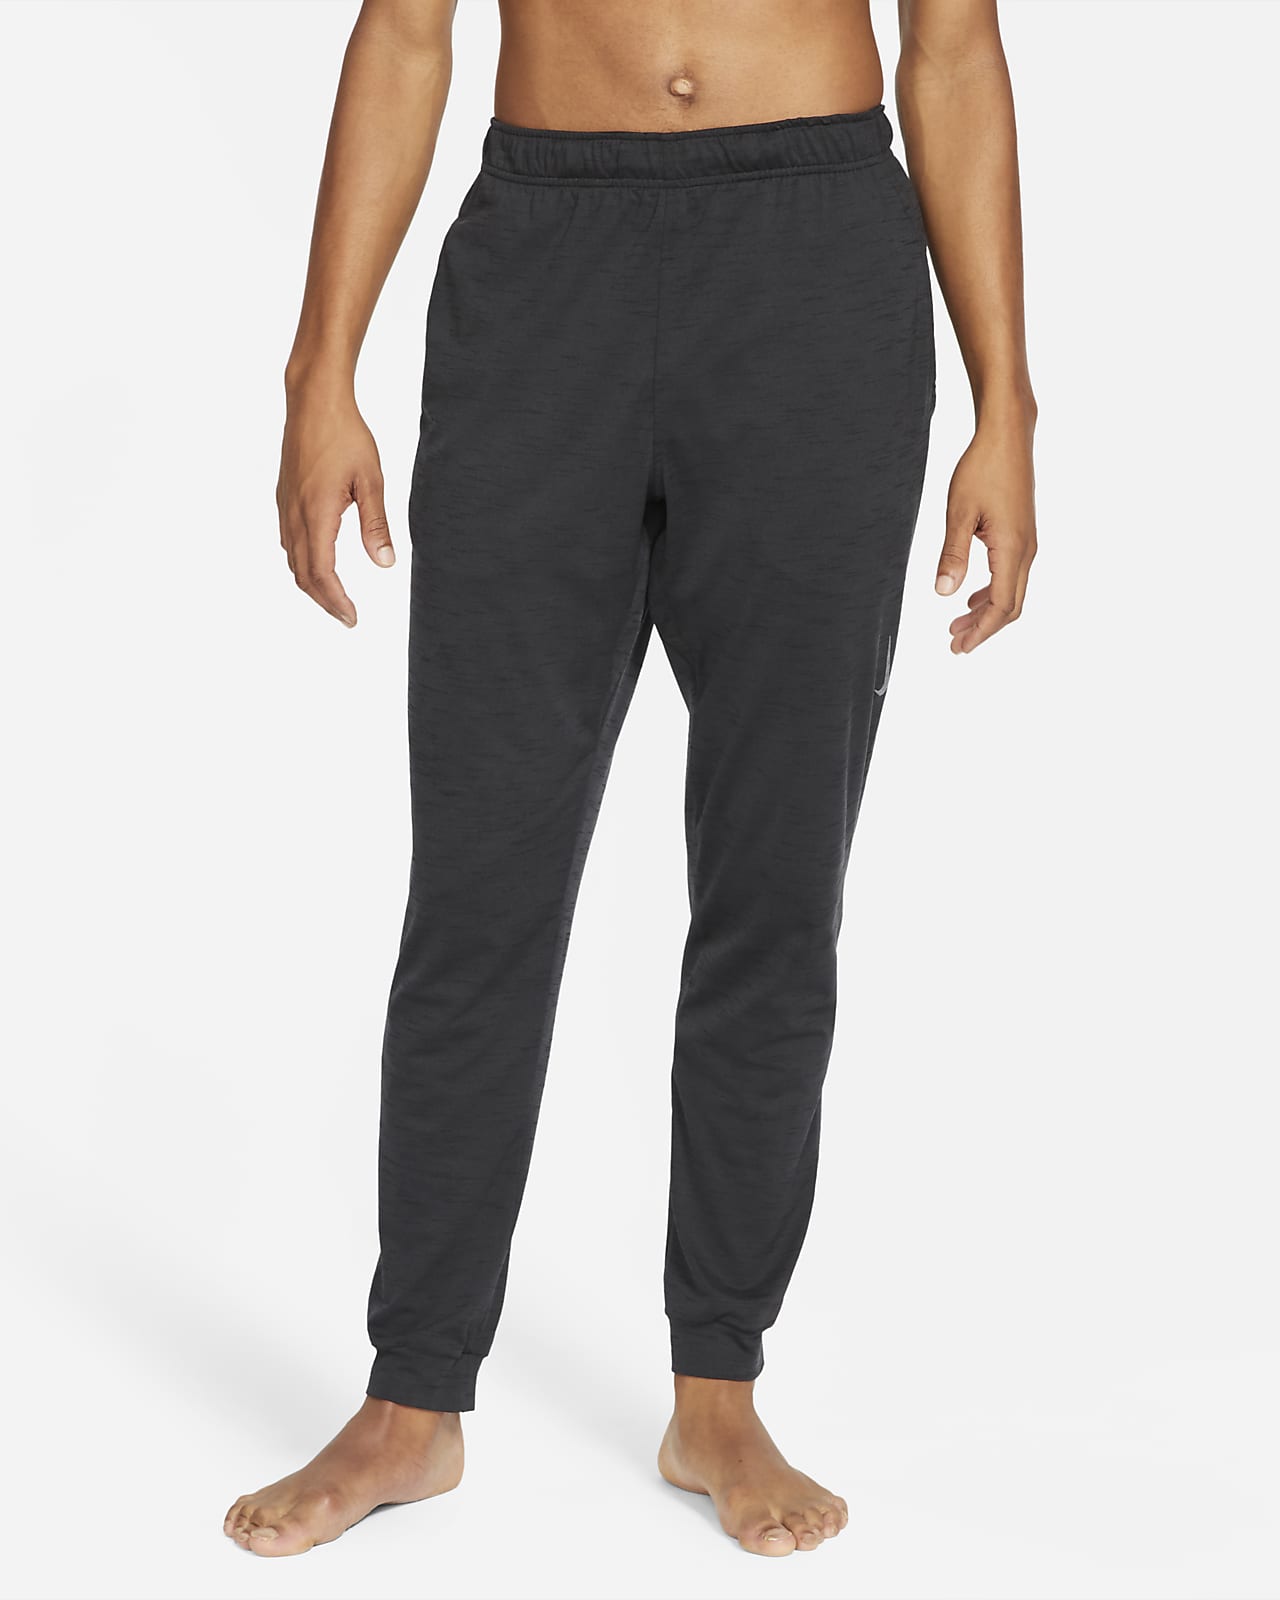 Nike Dri-FIT Yoga Pants.